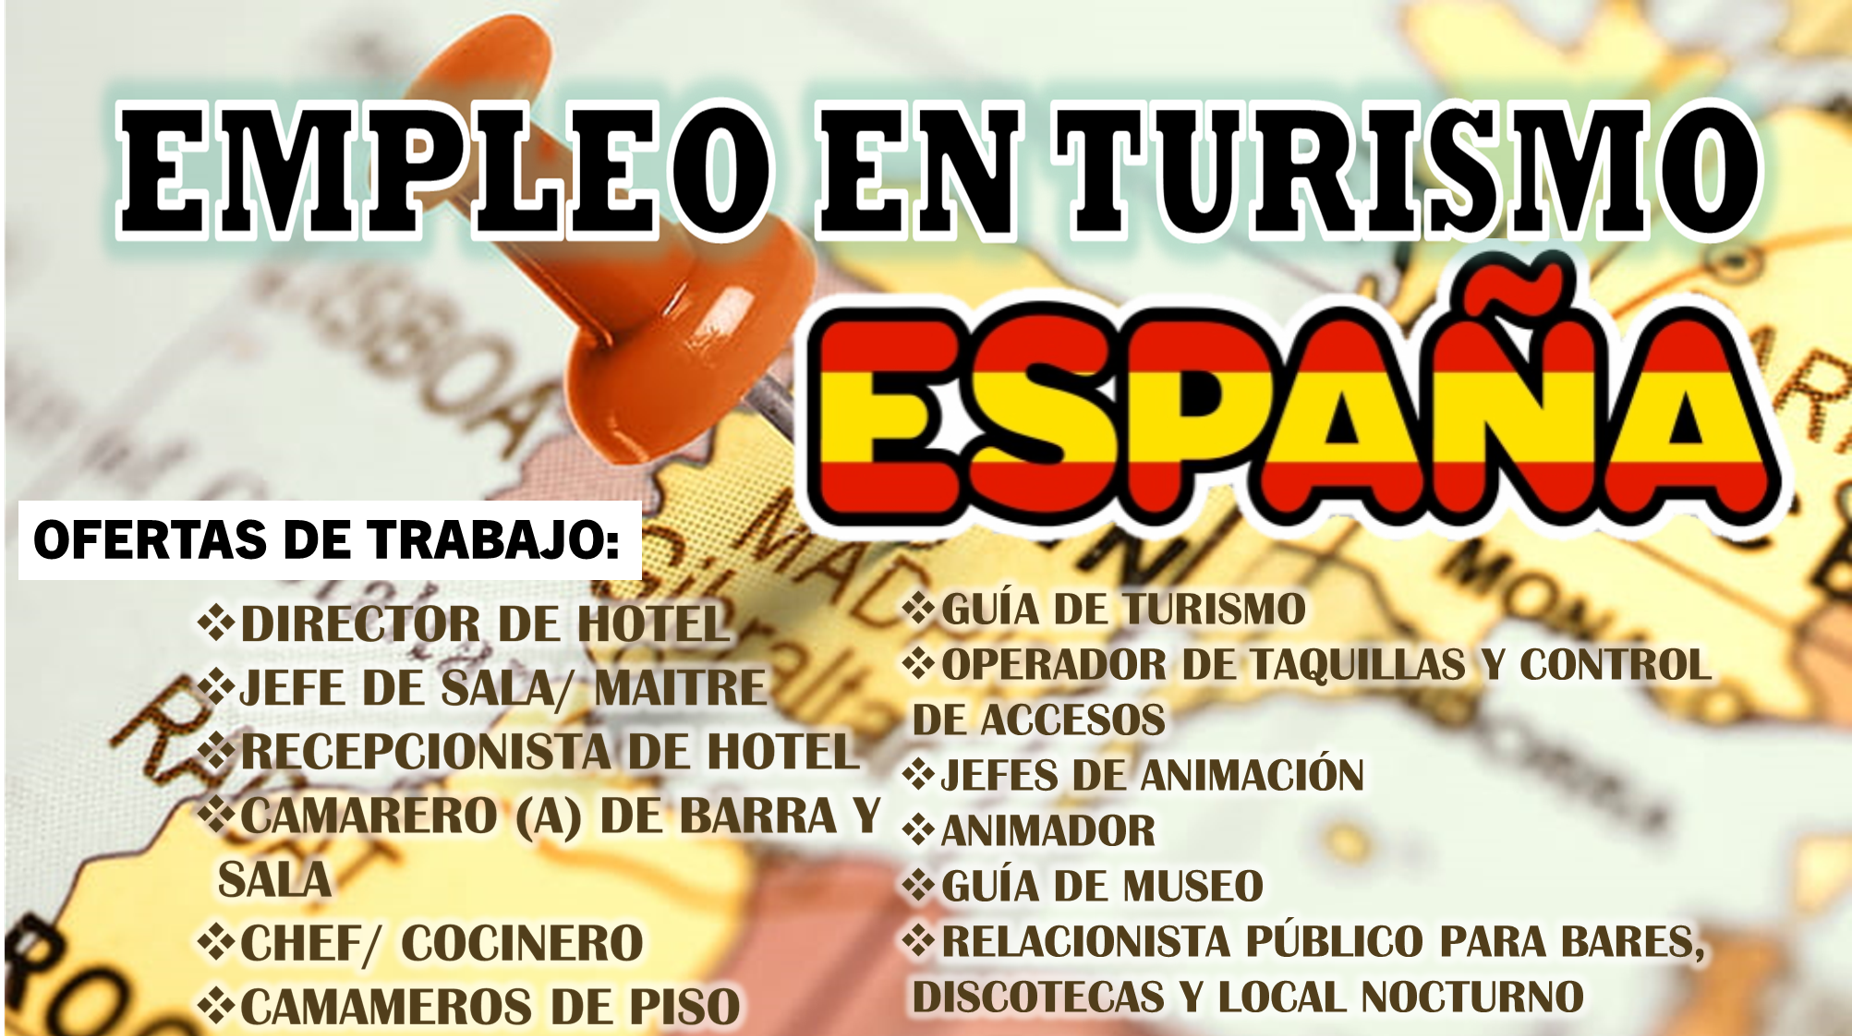 Empleo en Turismo España